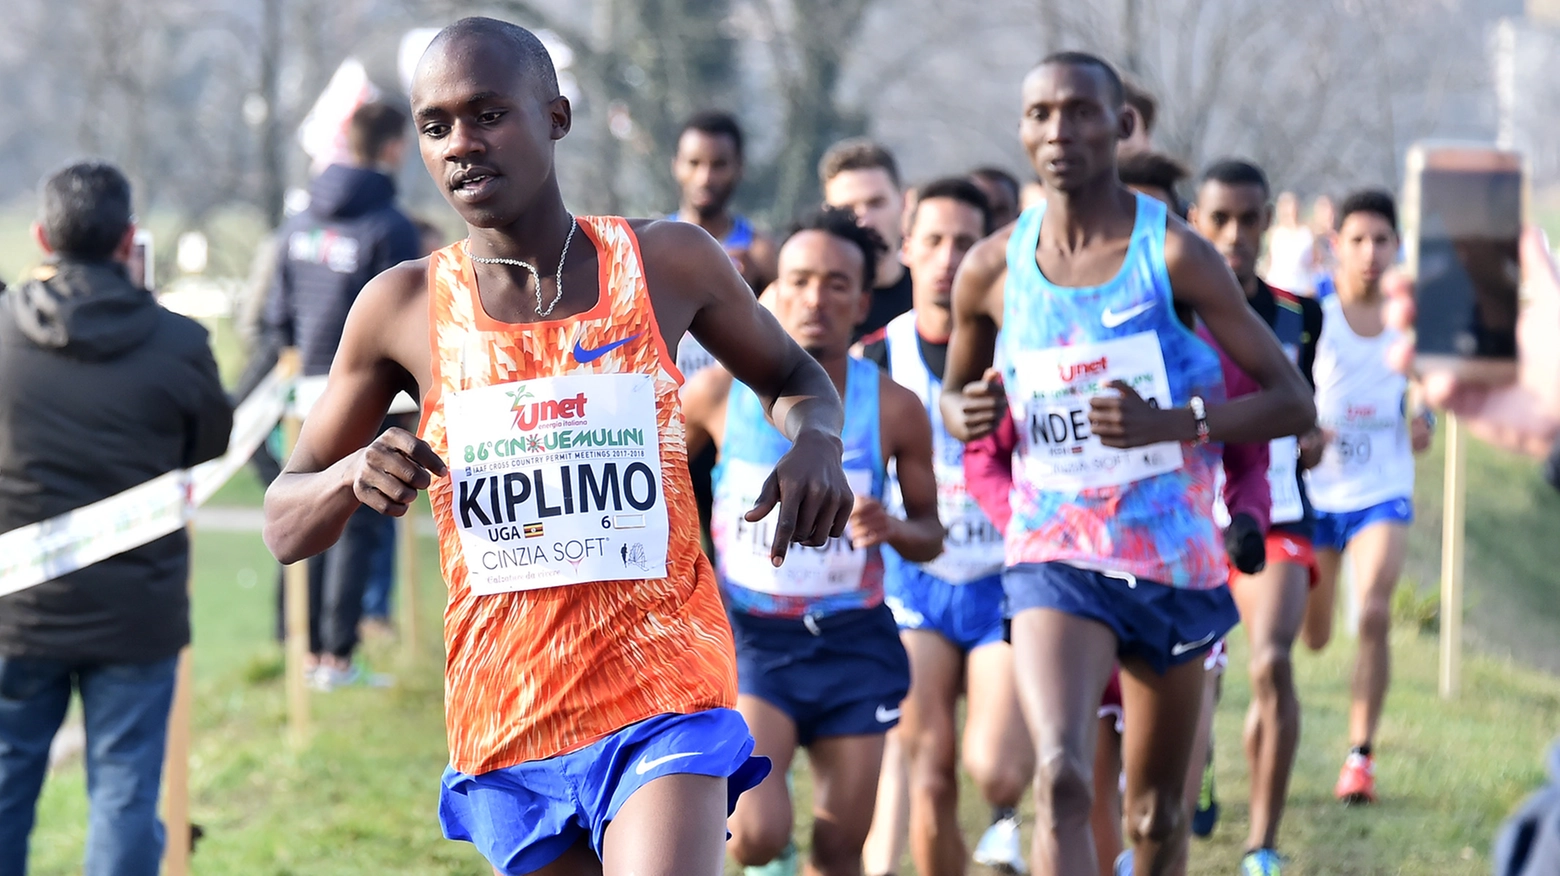 Uganda e Etiopia trionfano nelle rispettive gare maschili e femminile, bene comunque gli azzurri